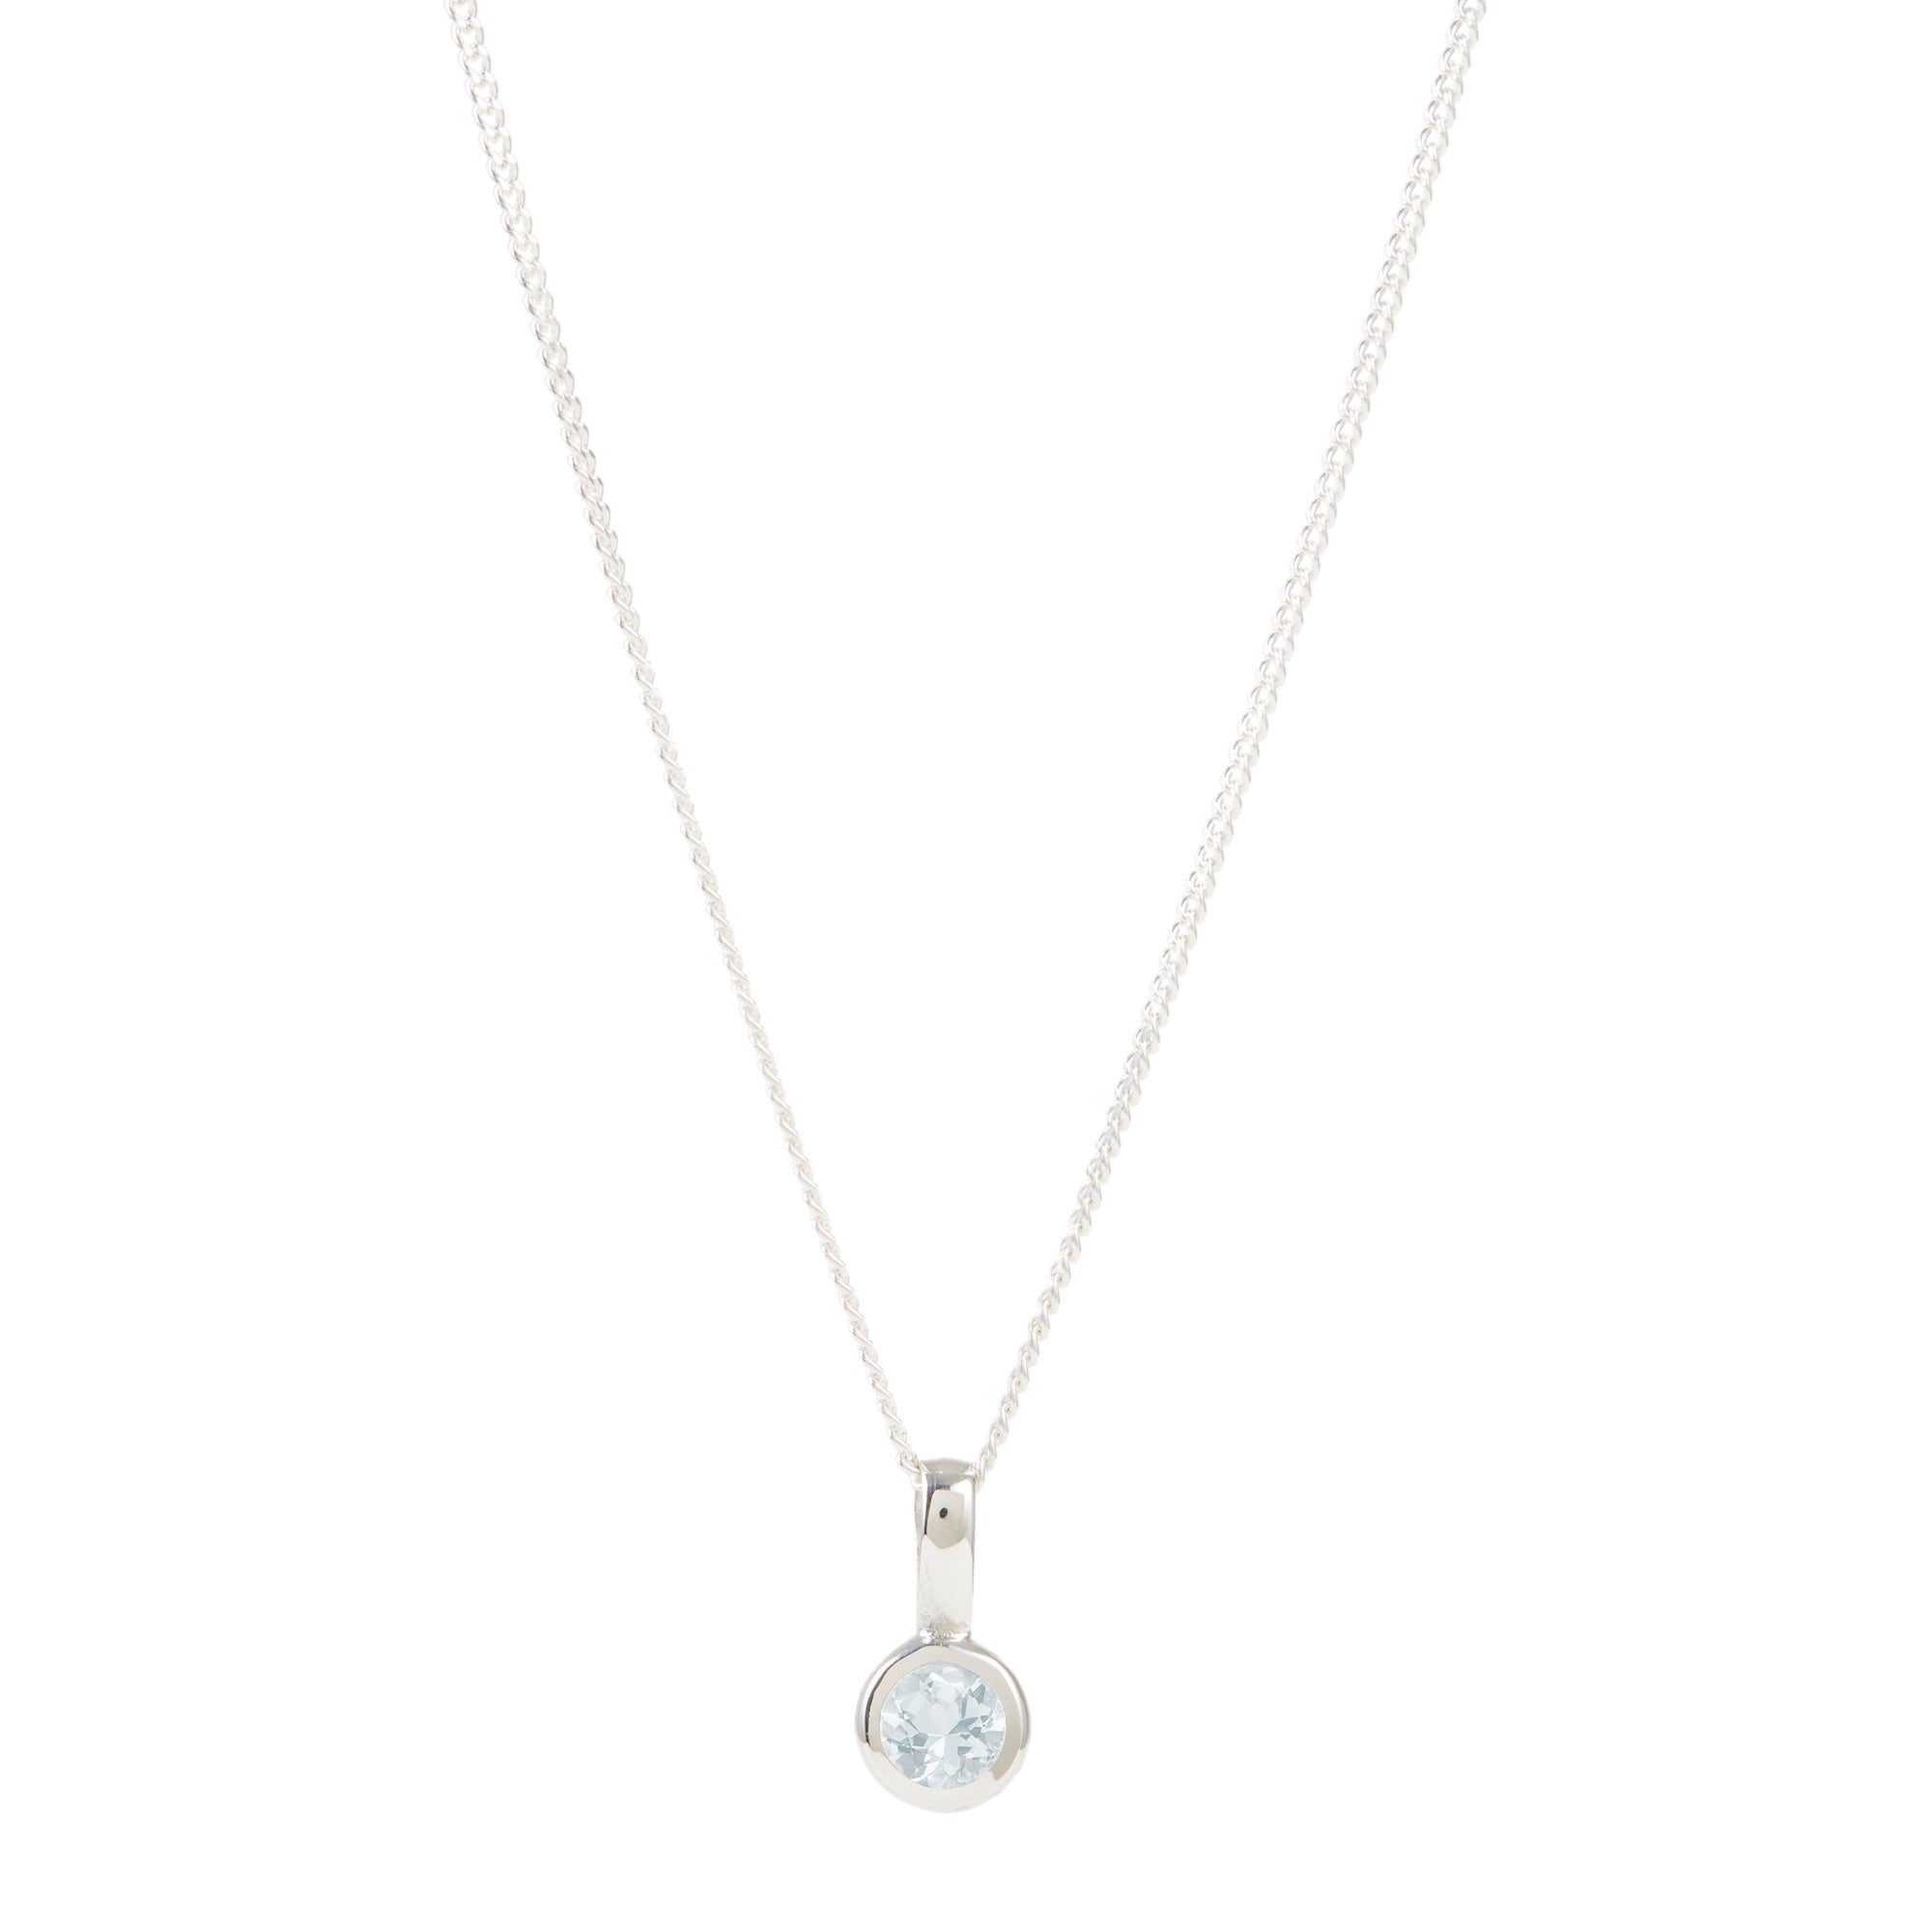 March Birthstone Charm Necklace - Aquamarine